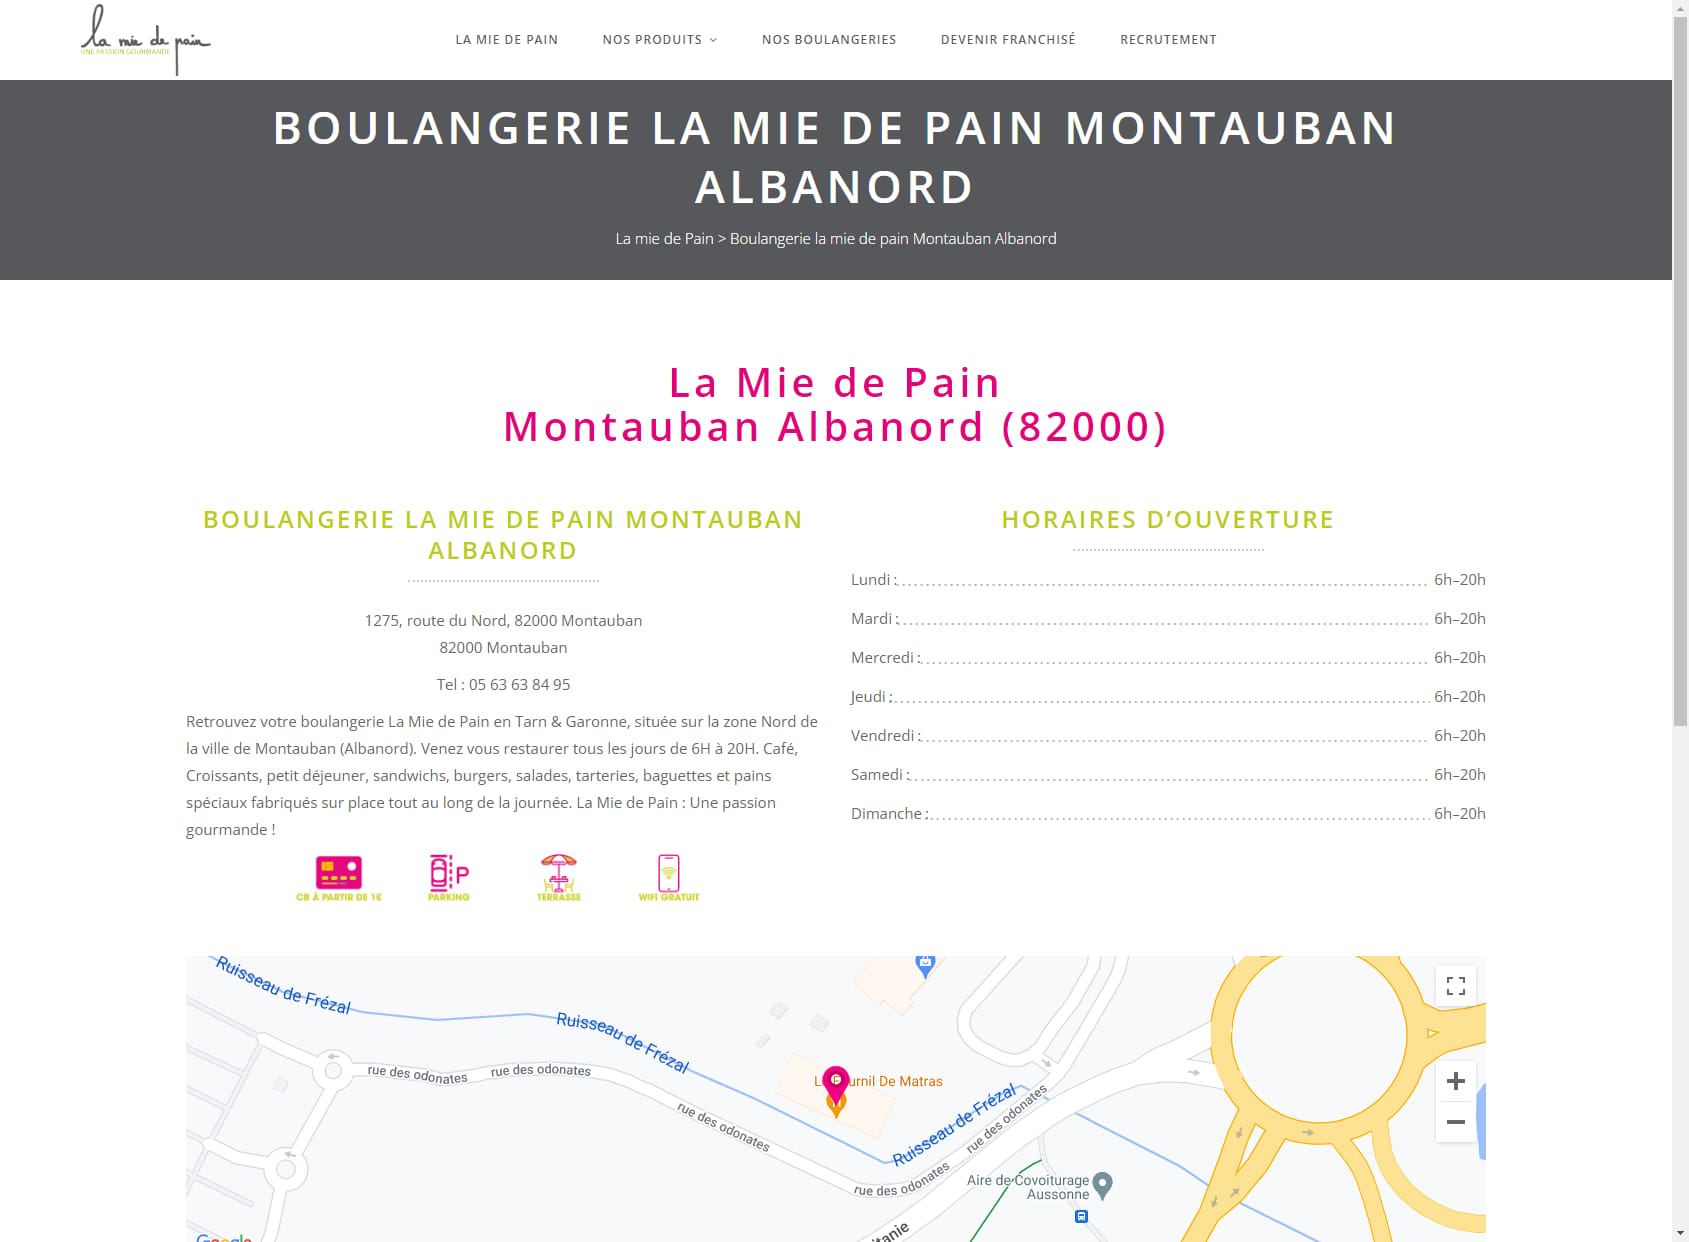 La Mie de Pain Montauban Albanord